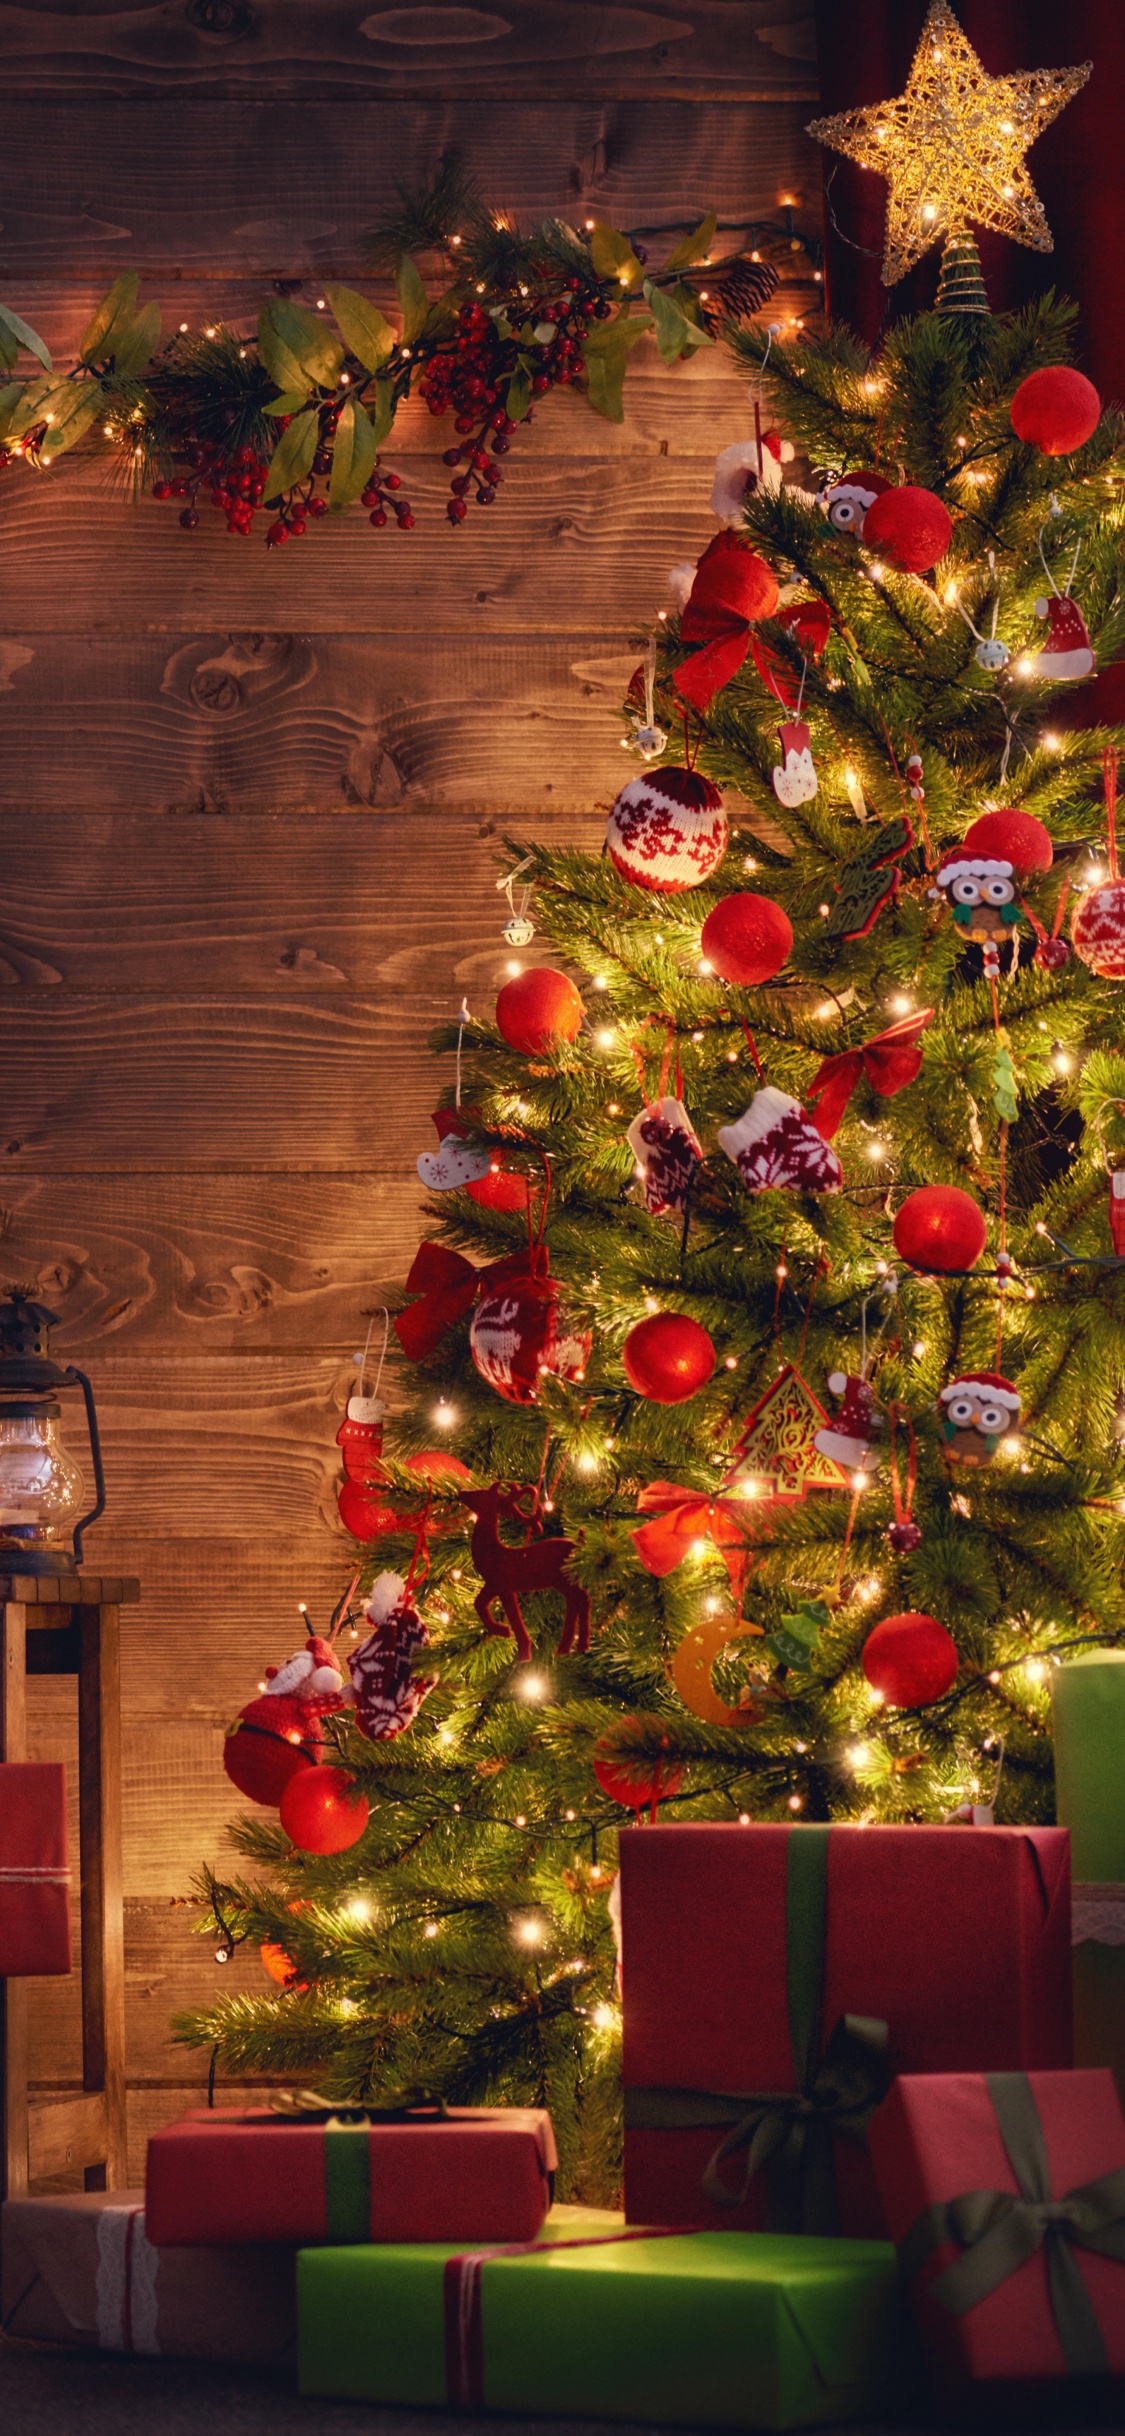 圣诞树, 圣诞节那天, 圣诞装饰, 圣诞节, 圣诞彩灯 壁纸 1125x2436 允许